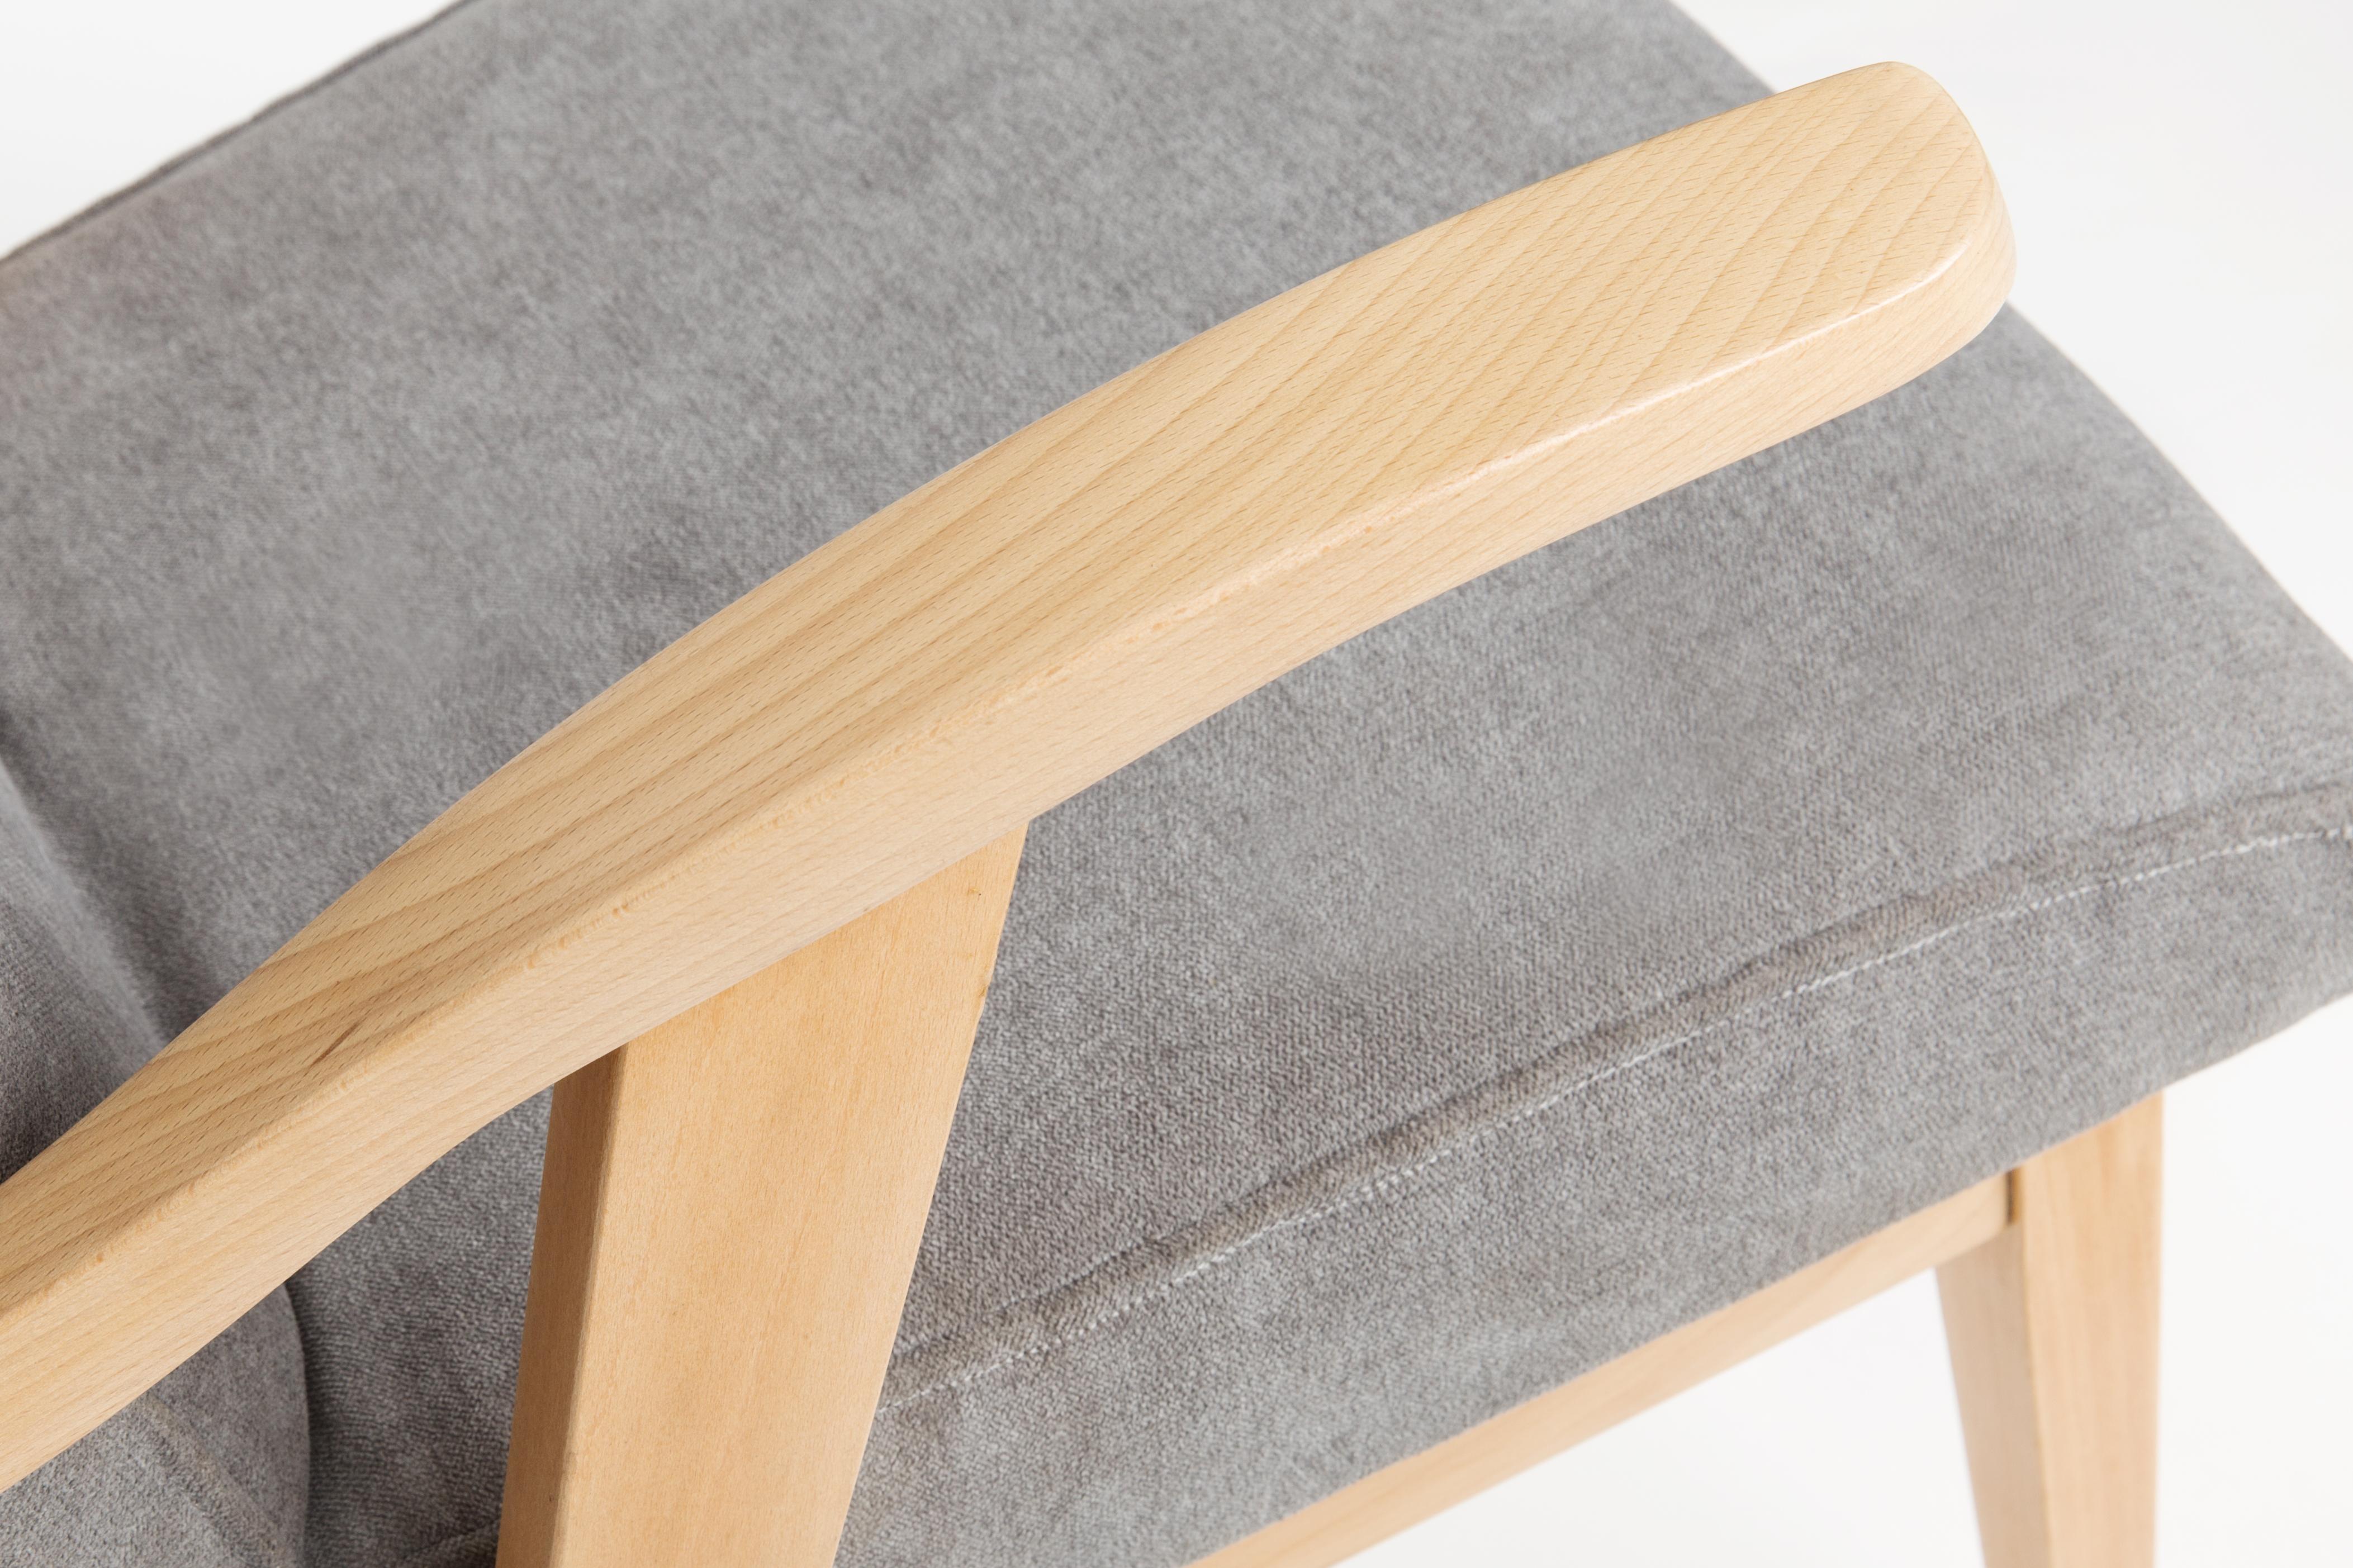 Von Mieczyslaw Puchala entworfener Sessel in einer Classic-Ausgabe. Helles Holz kombiniert mit einem grauen Stoff verleiht ihm Eleganz und Noblesse. Der Stuhl wurde einer kompletten Tischler- und Polstermöbelrenovierung unterzogen. Das Holz ist in